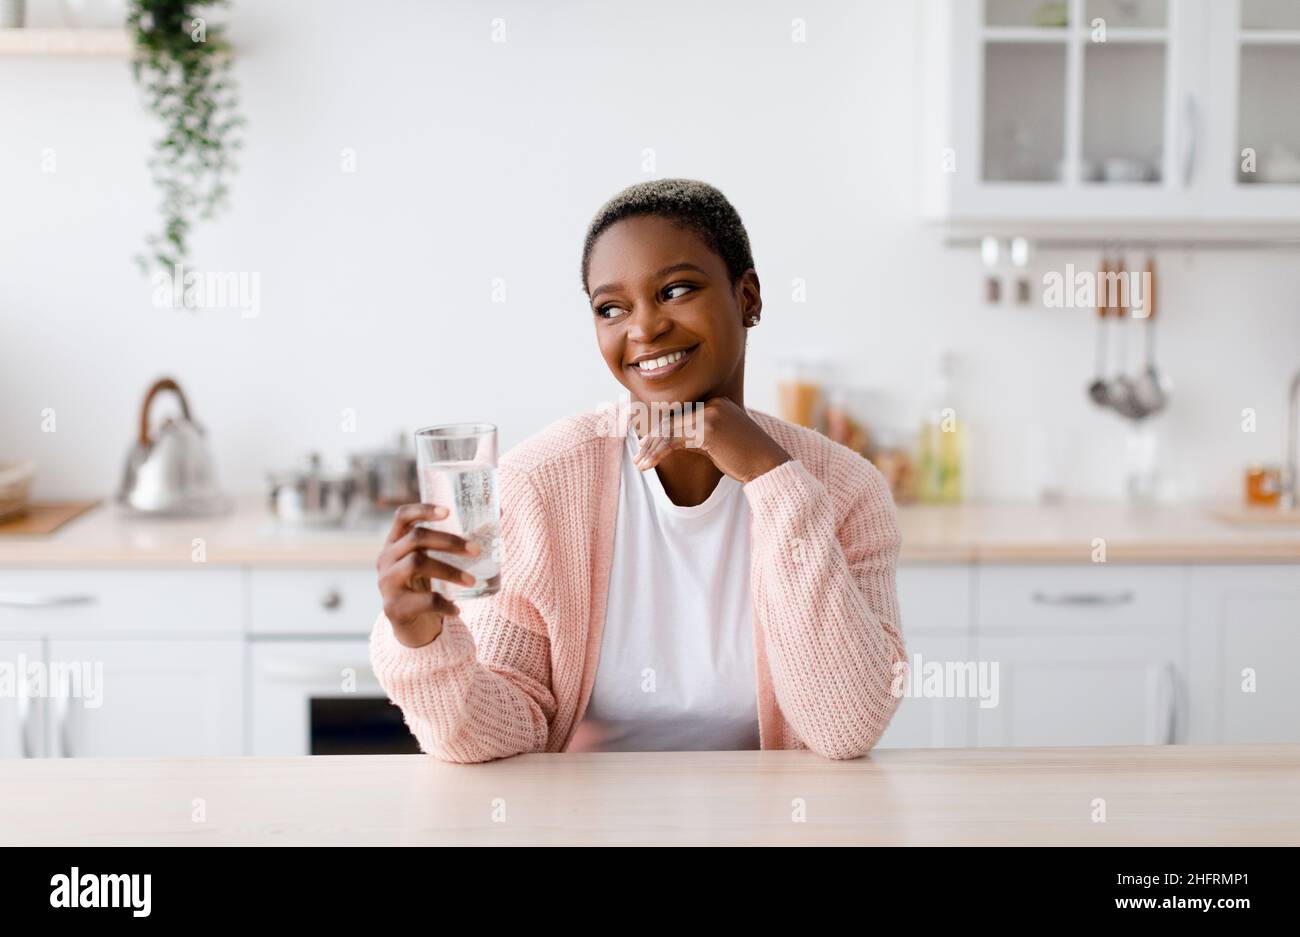 Souriant heureux jeune femme noire attrayante tient un verre d'eau propre, pensive et regarder l'espace libre Banque D'Images